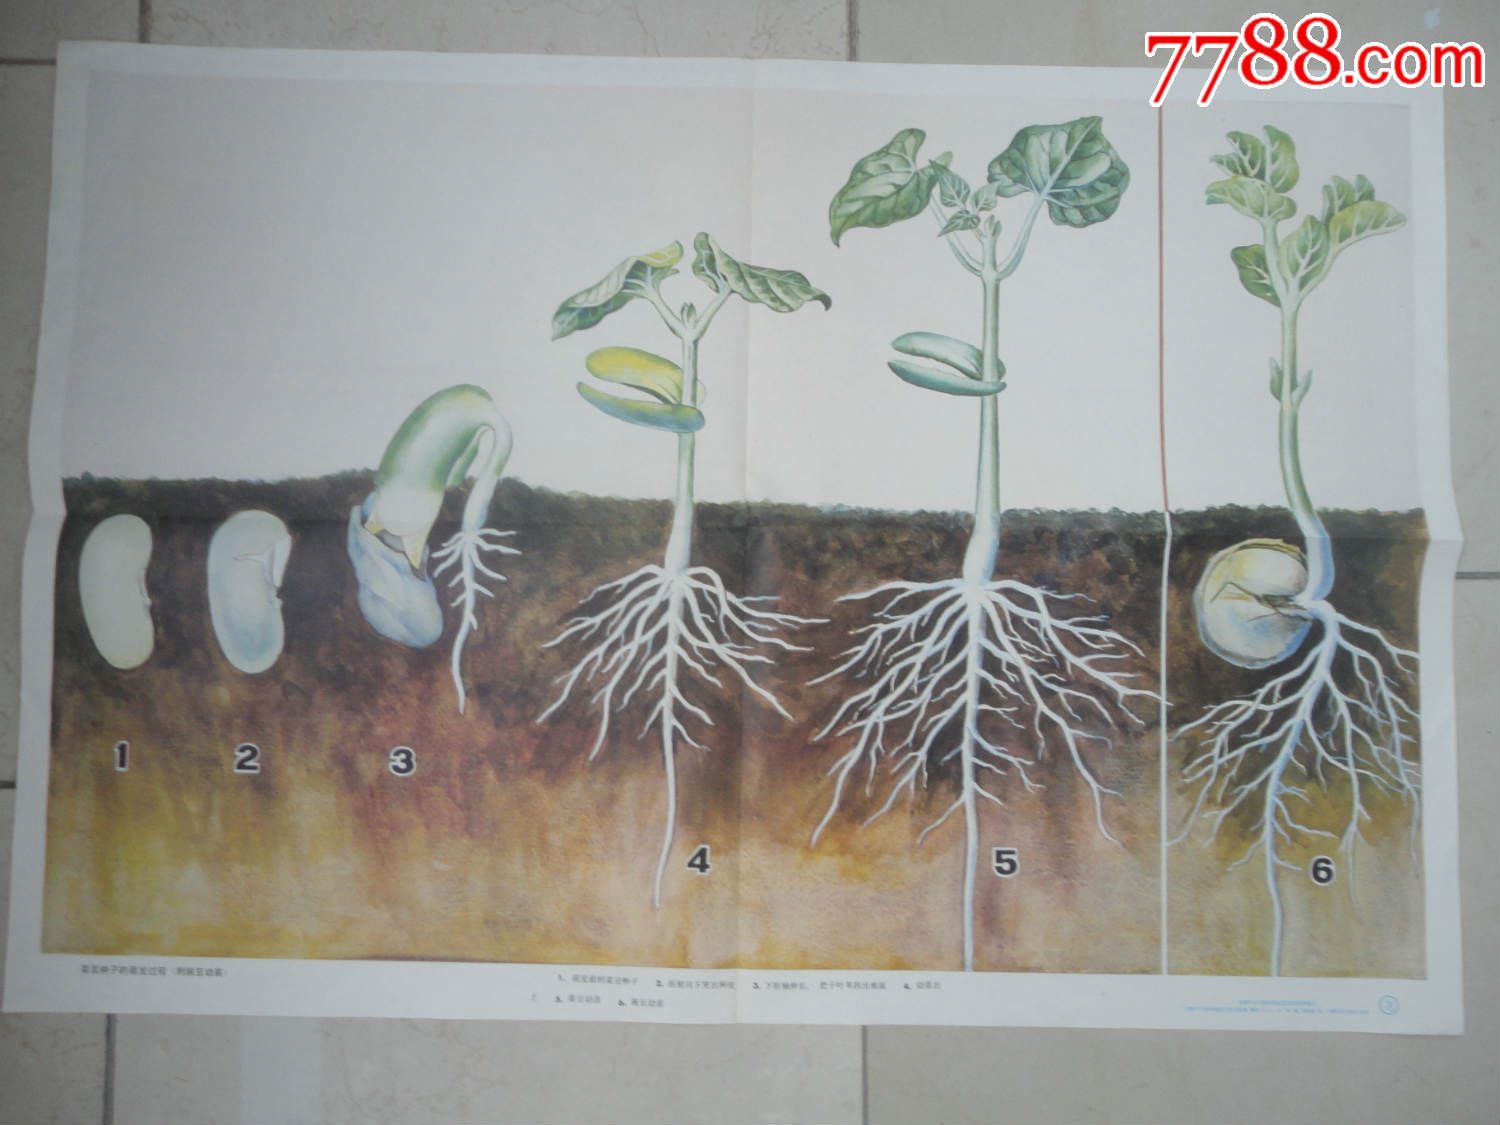 菜豆种子的萌发过程